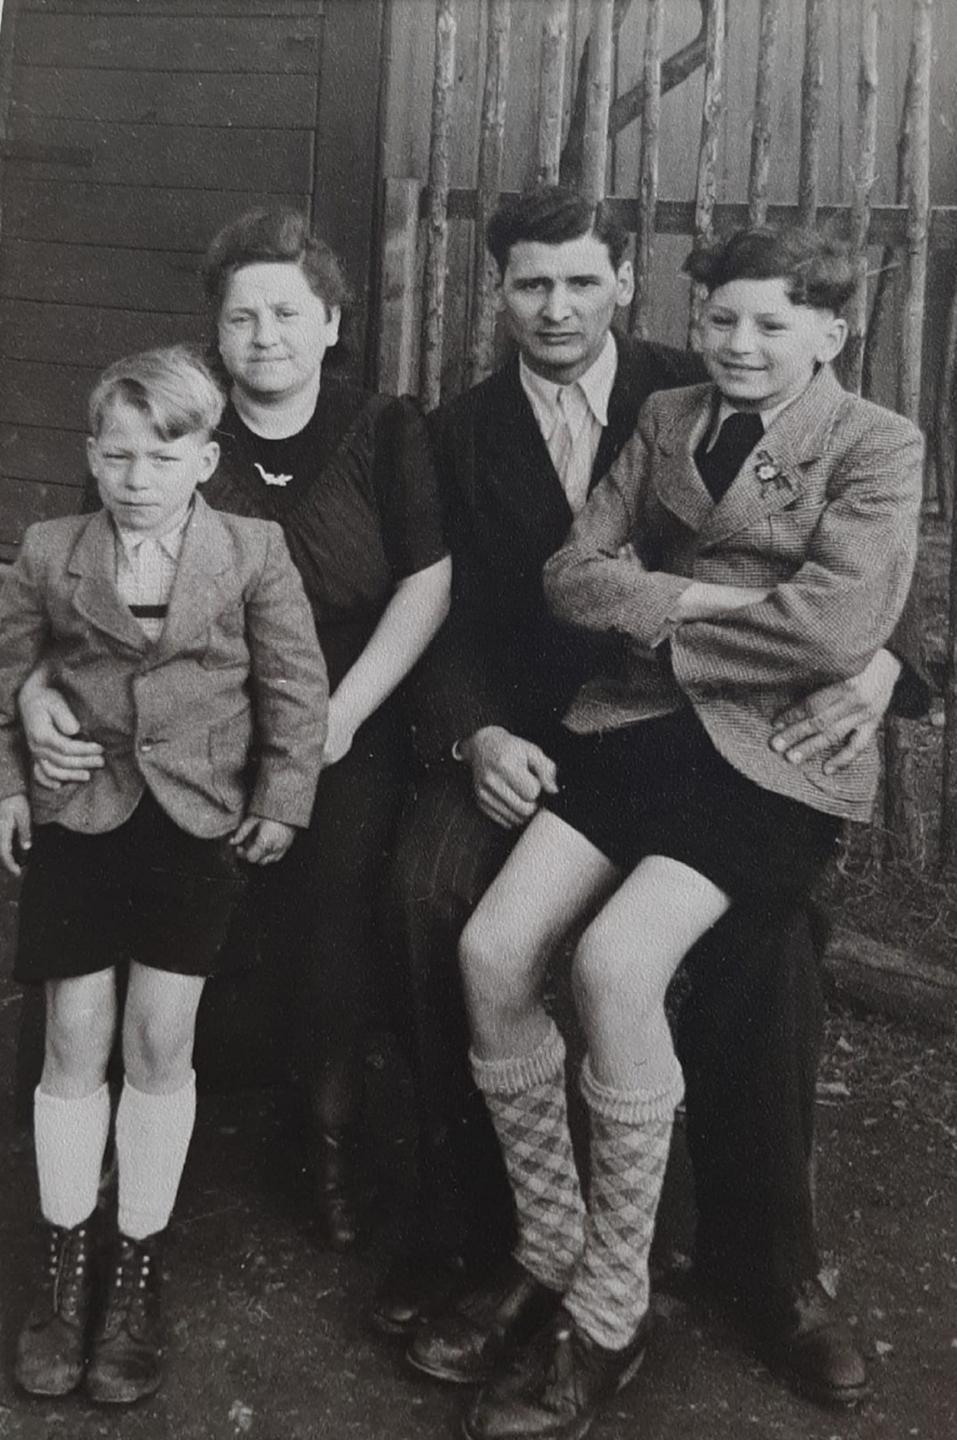 Schwarz-Weiß-Foto einer Kleinfamilie in den 1950ern